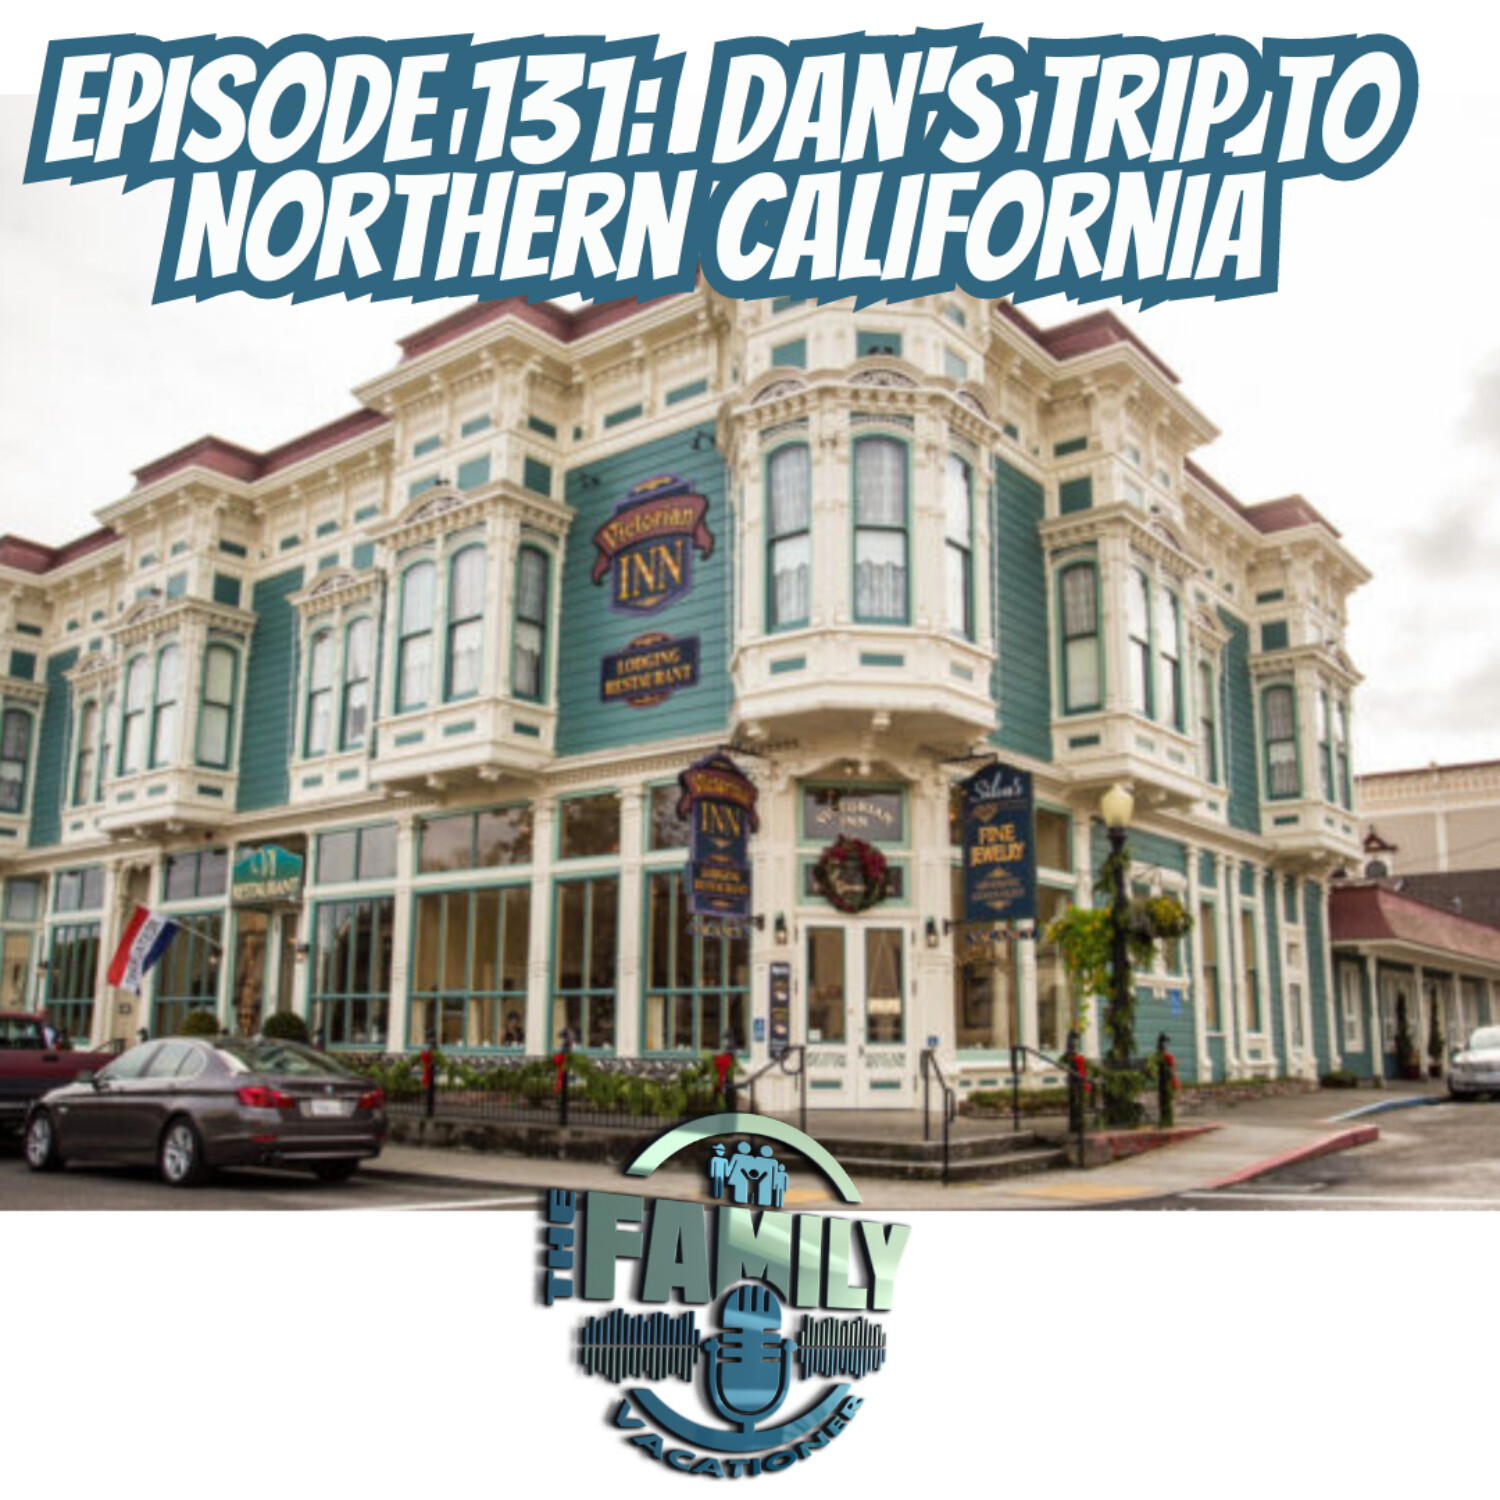 Dan’s Trip to Northern California